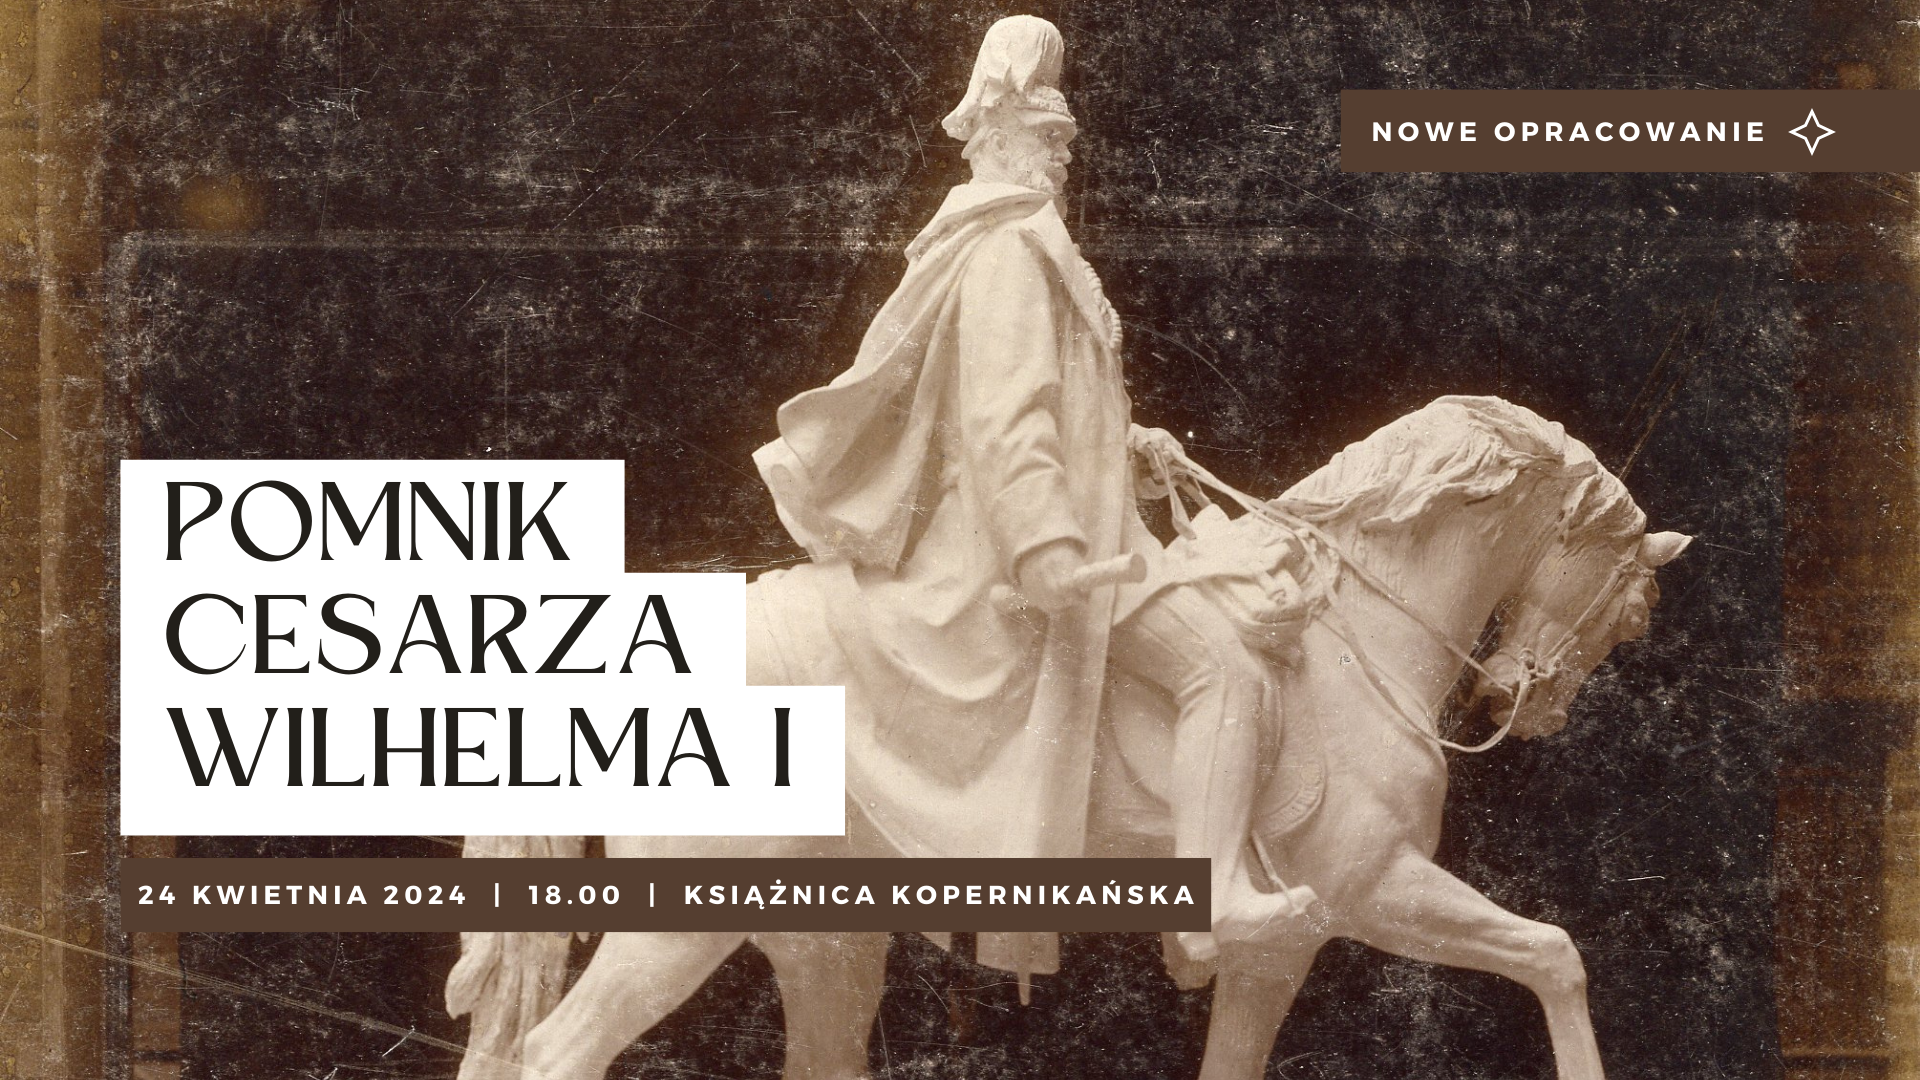 Grafika zapraszająca na wykład "Pomnik cesarza Wilhelma I". Rzeźba cesarza siedzącego na koniu